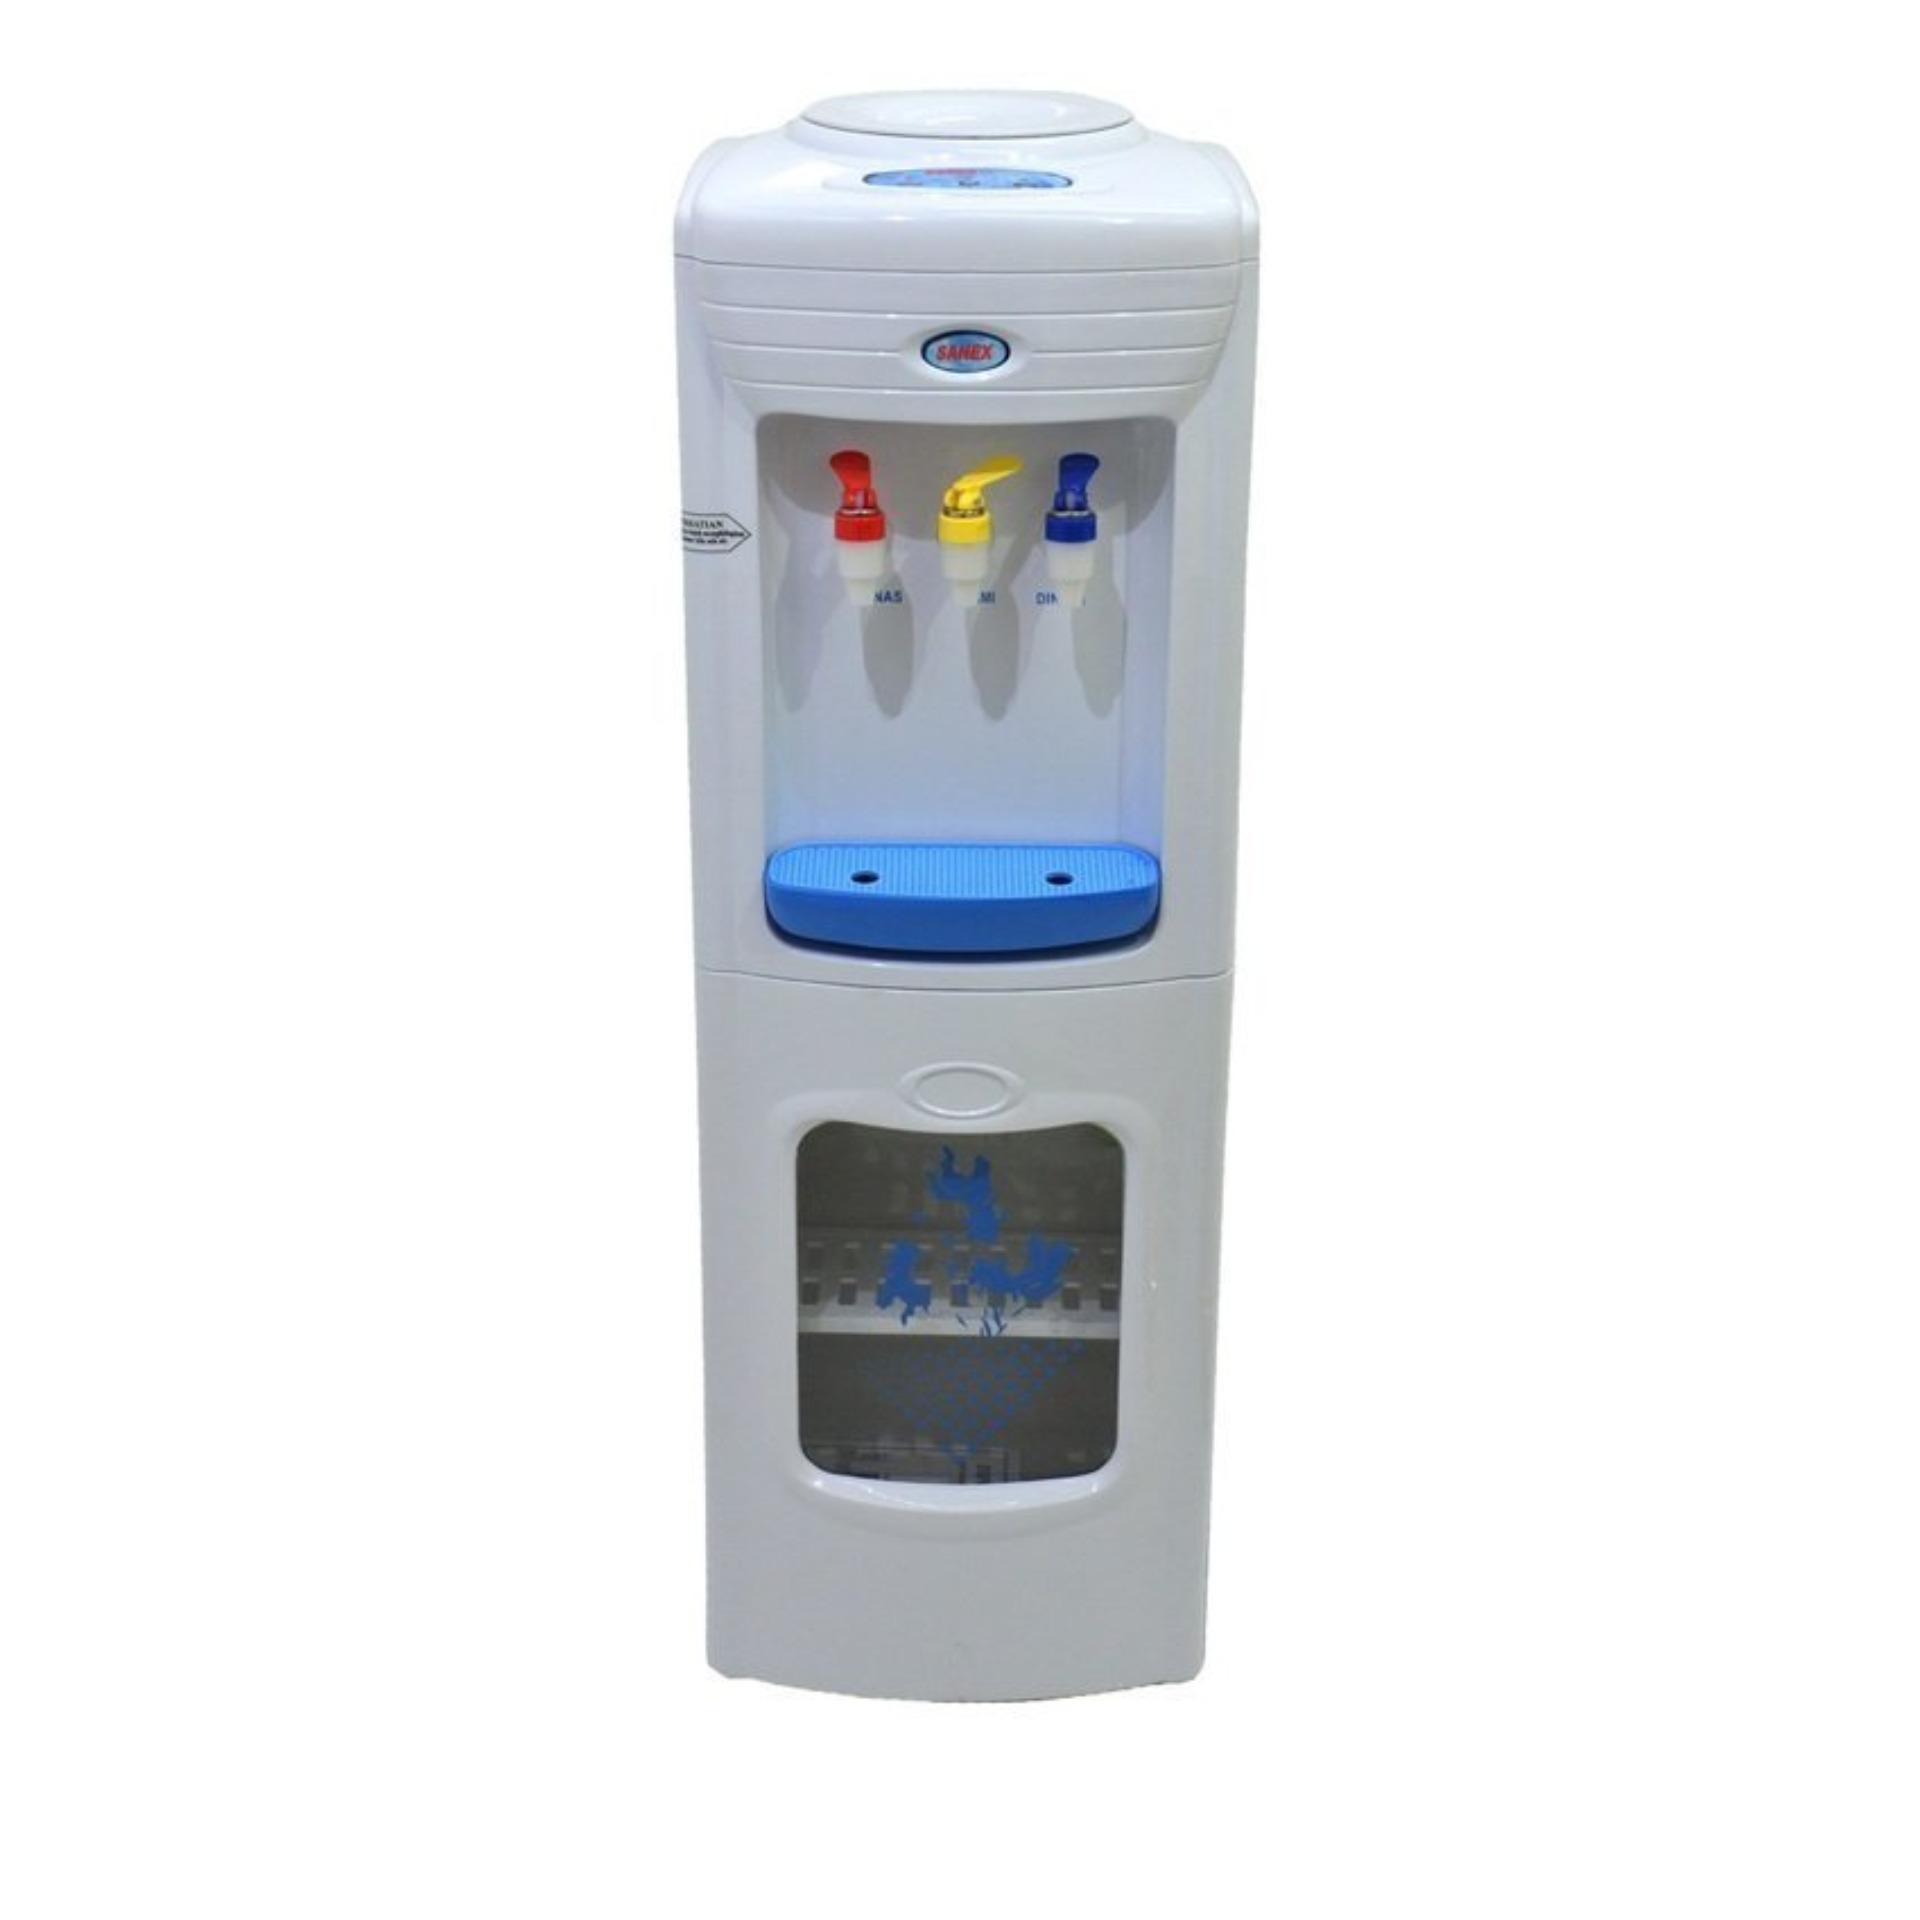 Sanex D-302 Dispenser Tinggi 3 Kran - Putih 